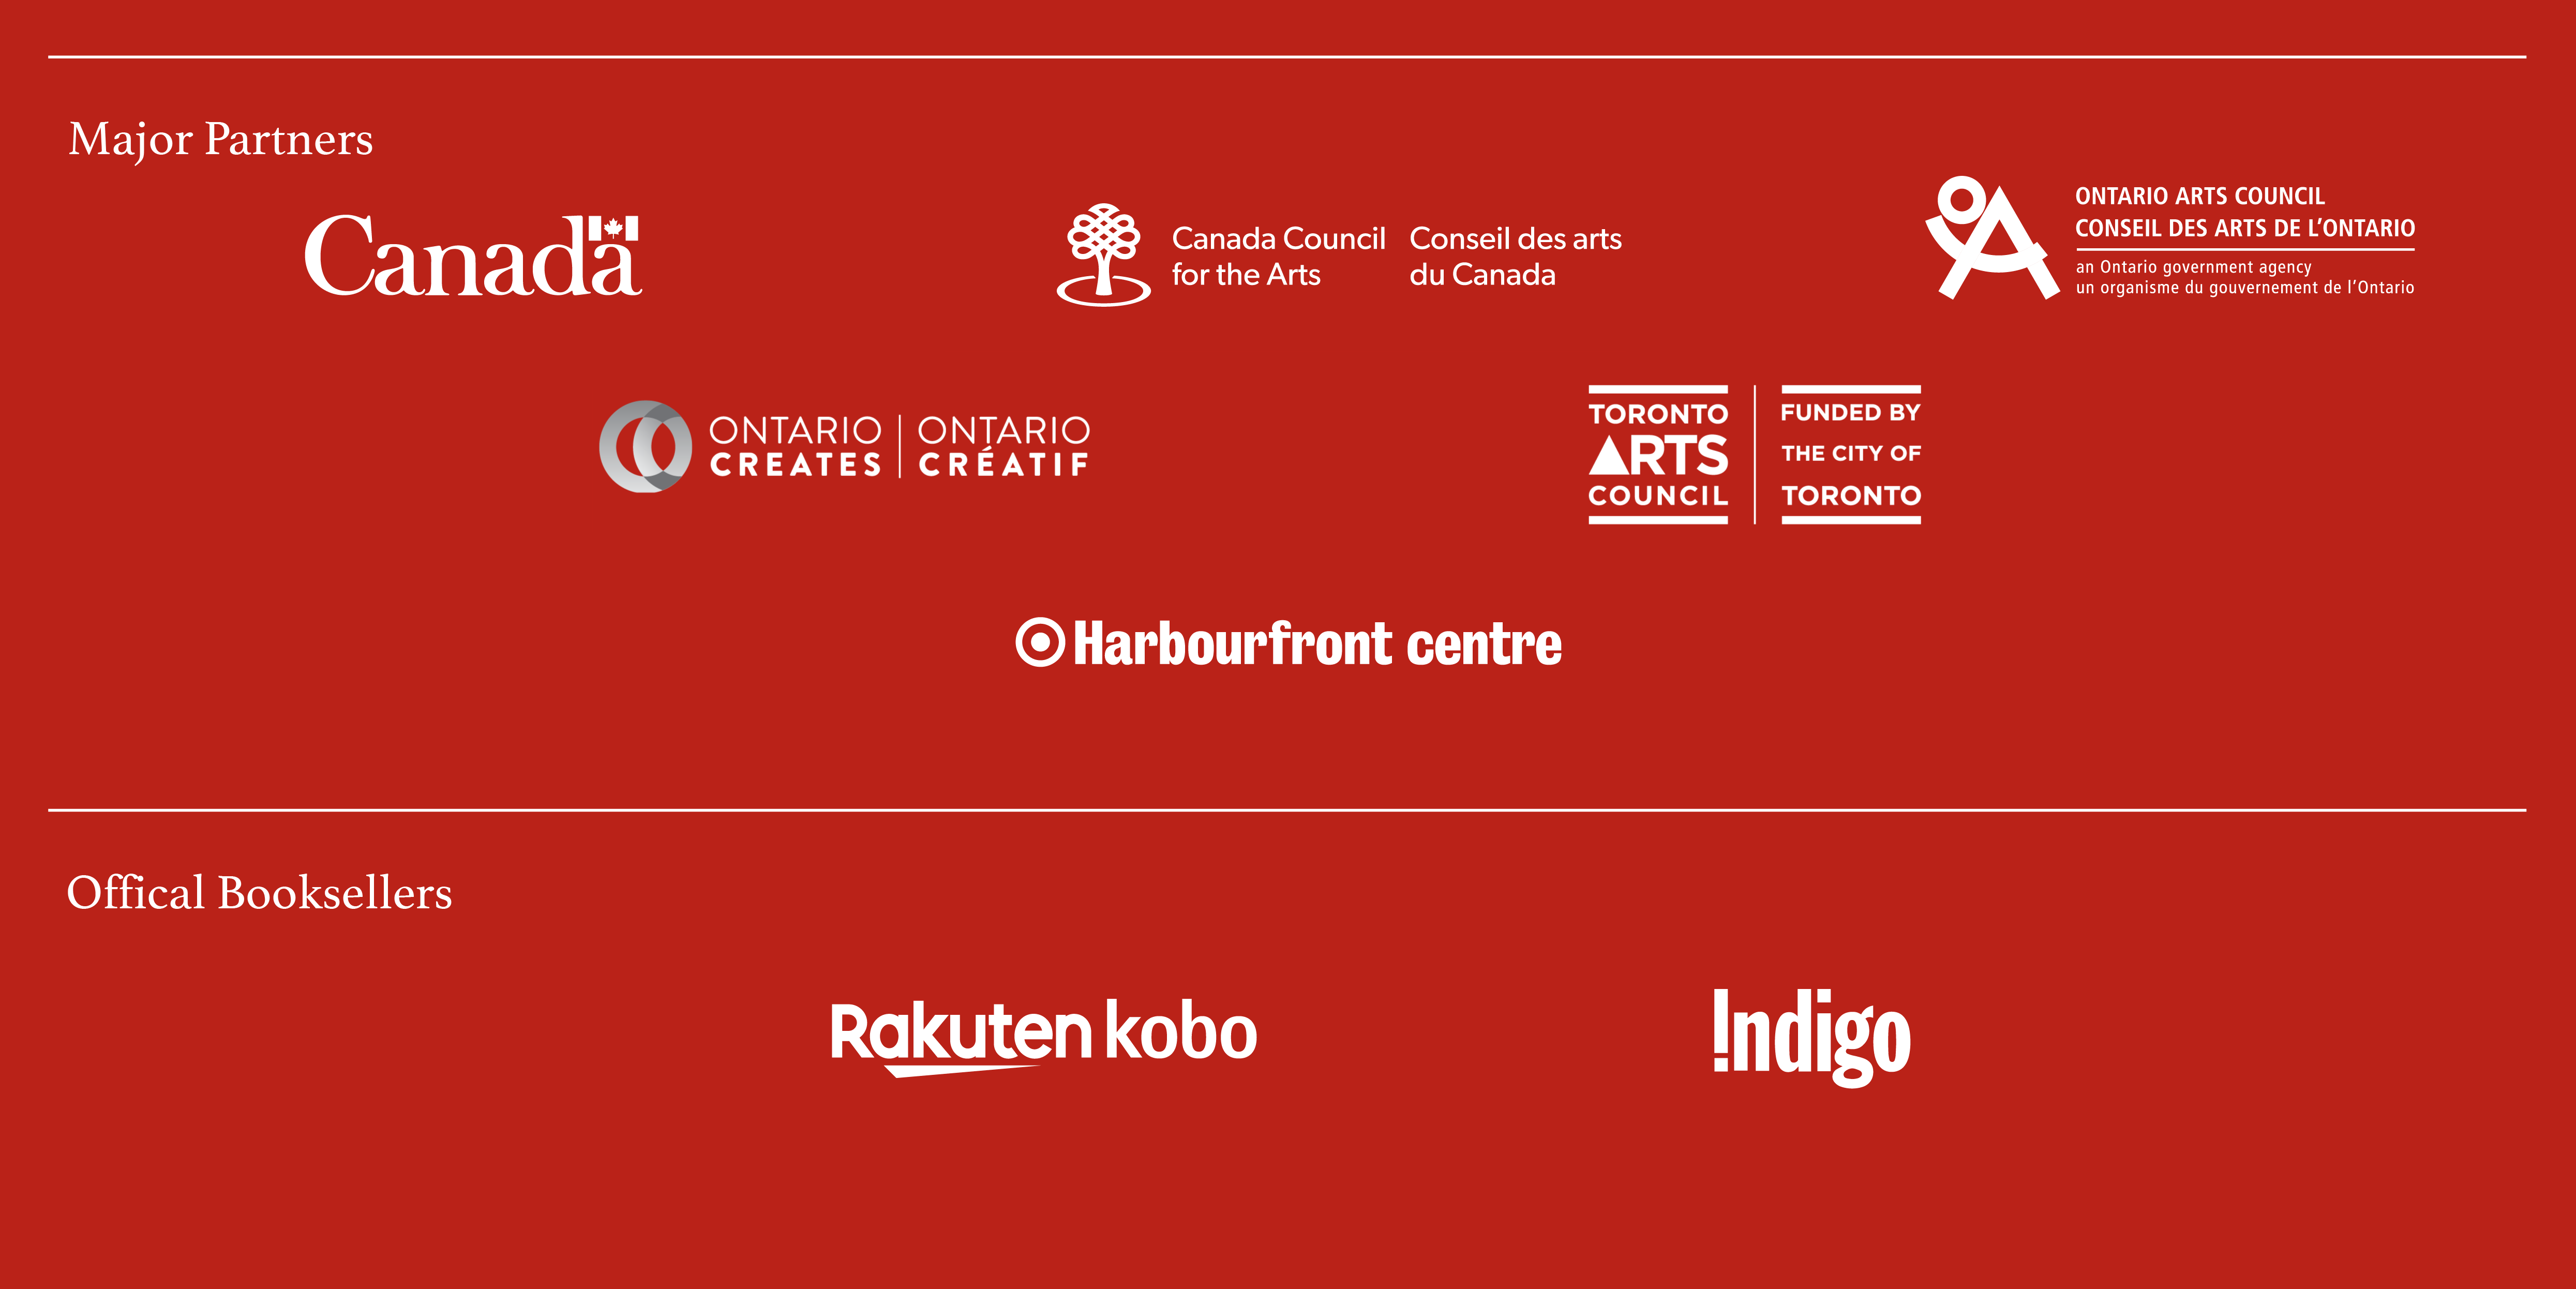 Major Partners: Canada logo, Canada Council for the Arts logo, Ontario Arts Council logo, Ontario Creates logo, Toronto Arts Council Funded by the City of Toronto logo, Harbourfront Centre logoOfficial Booksellers: Rakuten Kobo logo, Indigo logo